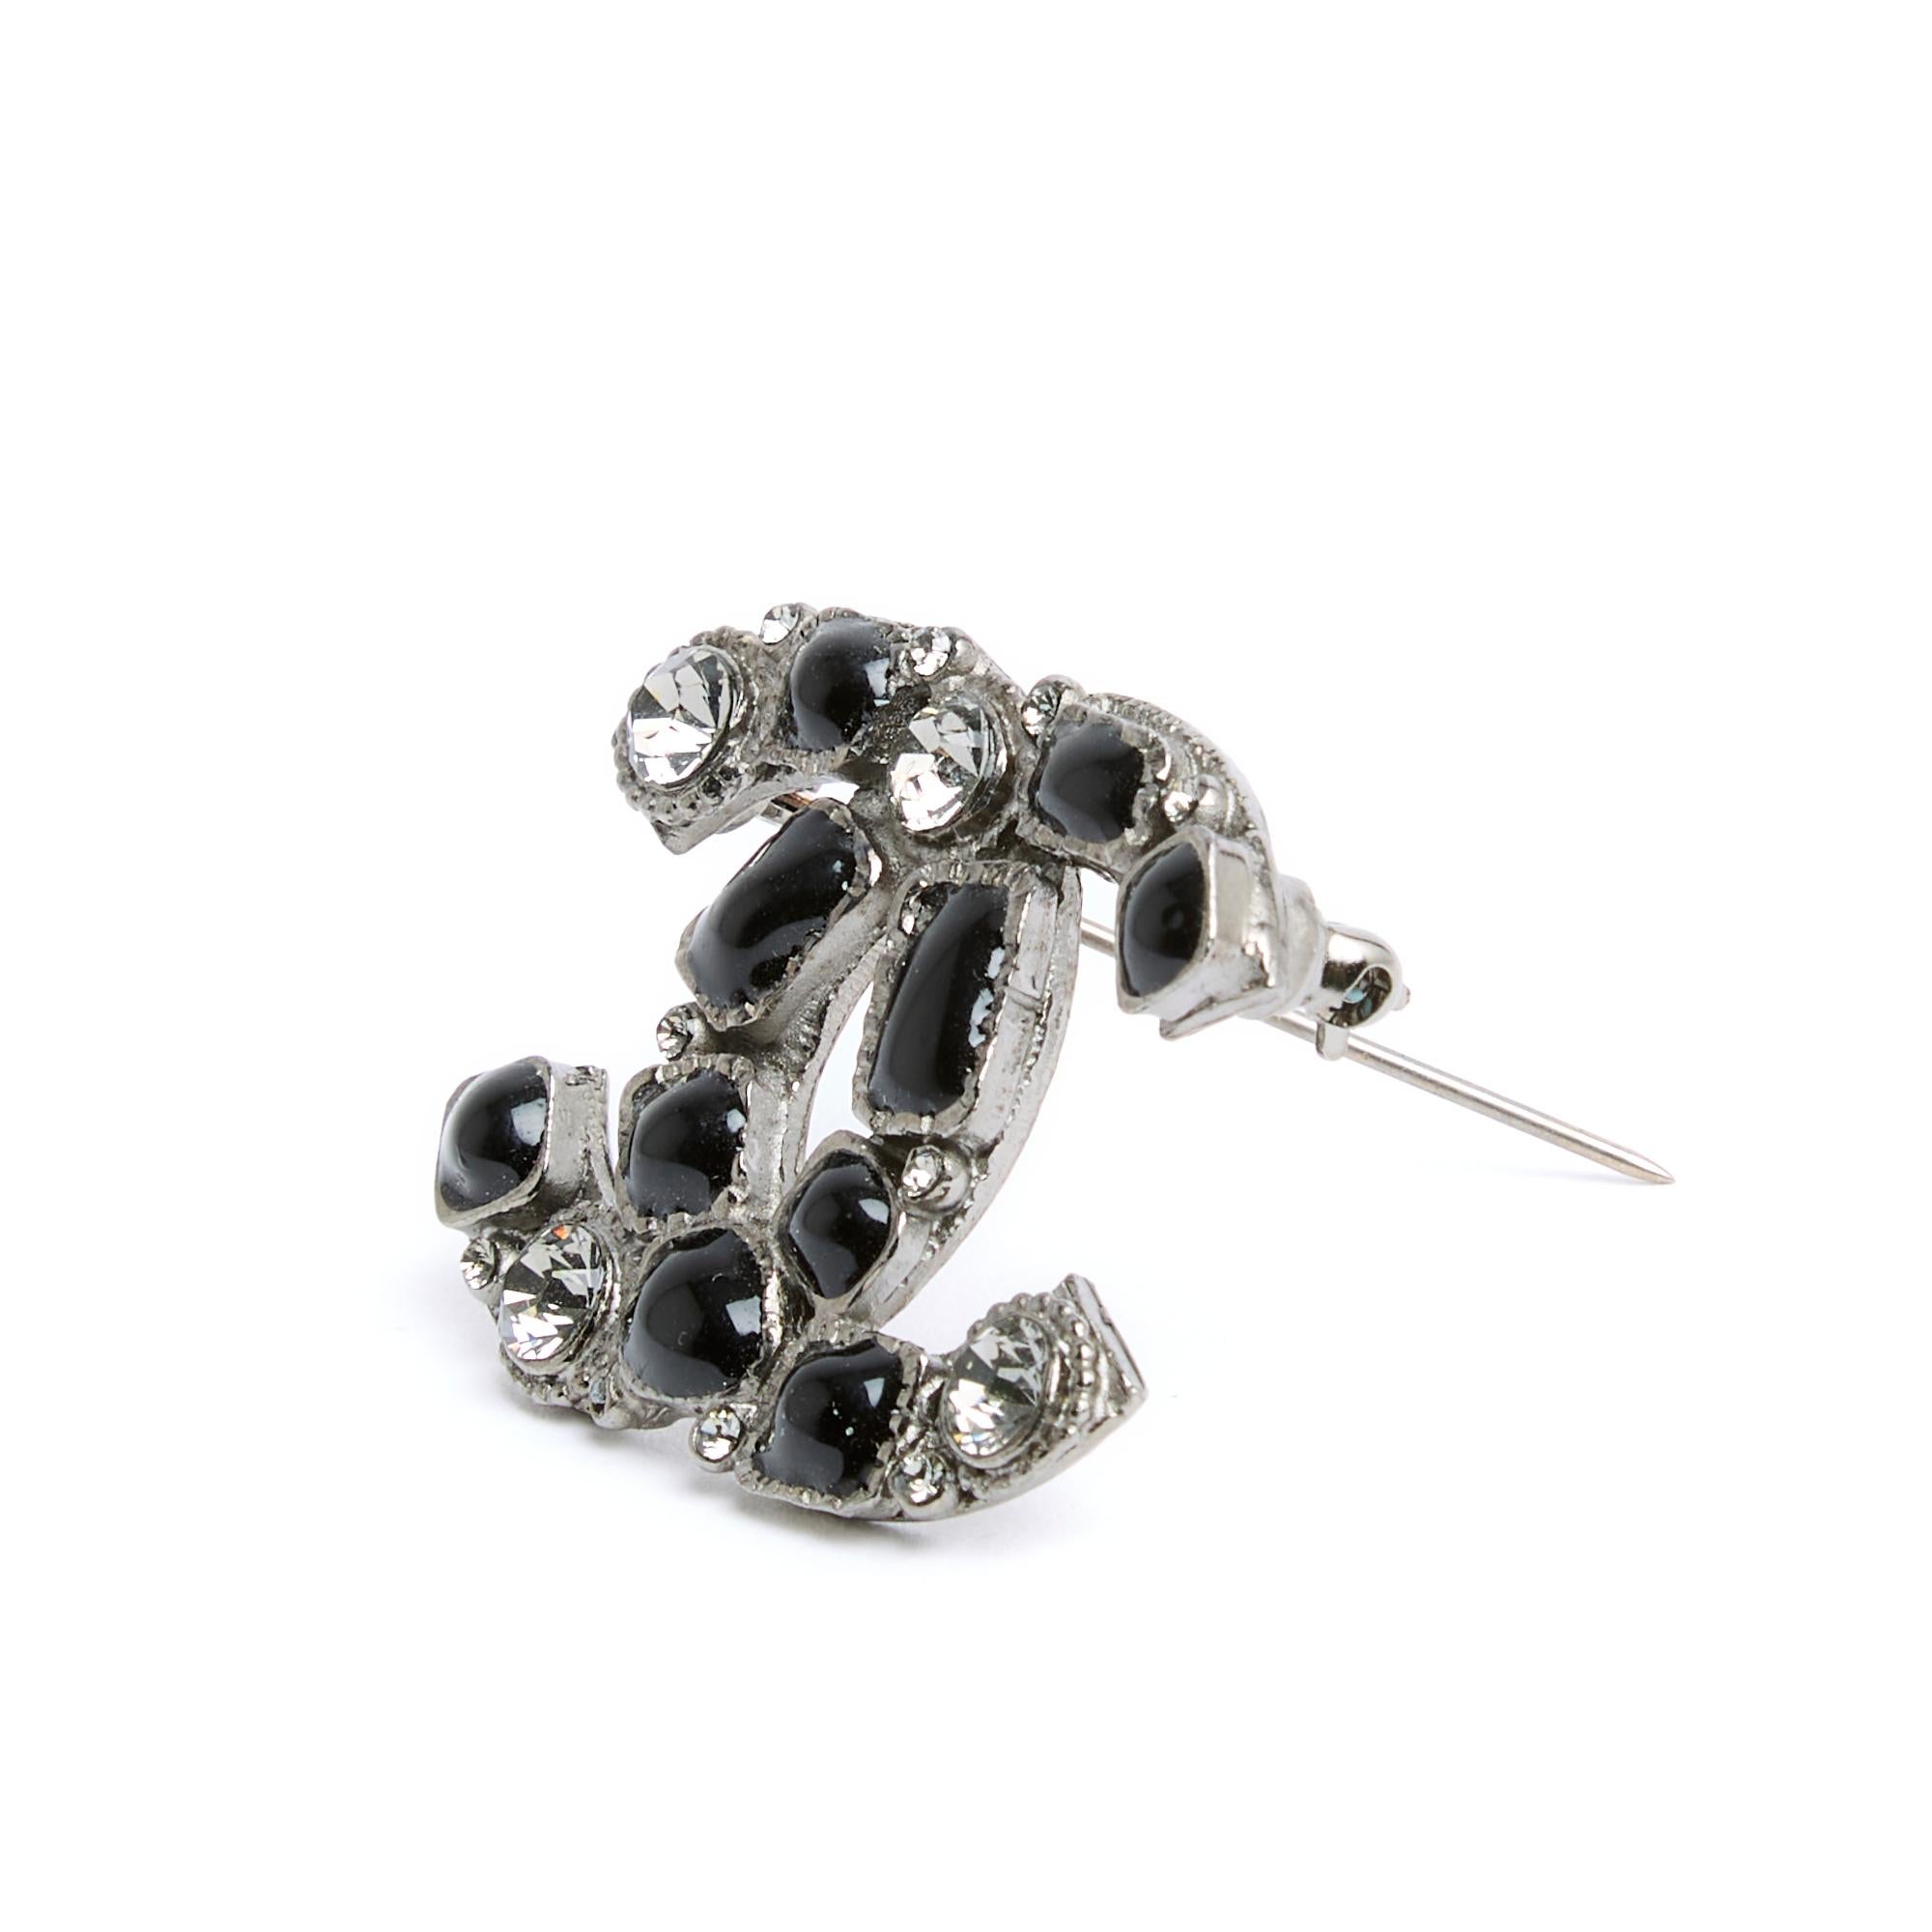 Chanel-Brosche aus der Collection'S Spring Summer 2009 mit dem CC-Logo-Motiv aus geschwärztem, silbernem Metall, verziert mit grauen Strasssteinen und schwarz emaillierten Cabochons. Breite 3,7 cm x Höhe 2,9 cm. Die Brosche wird ohne